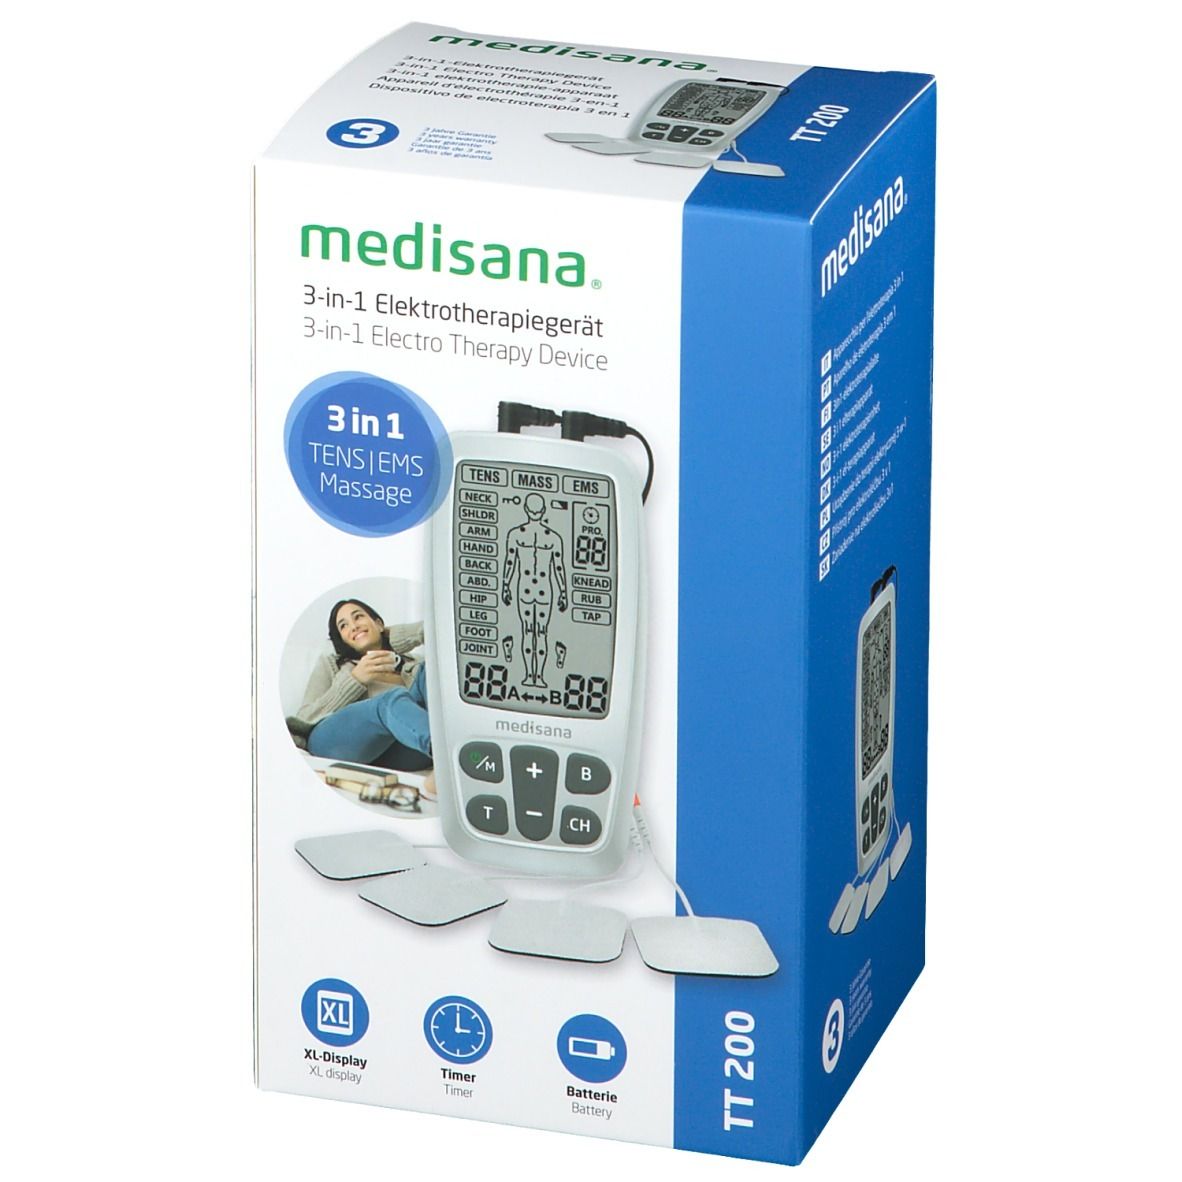 mediasana® 3-in-1 Elektrptherapiegerät